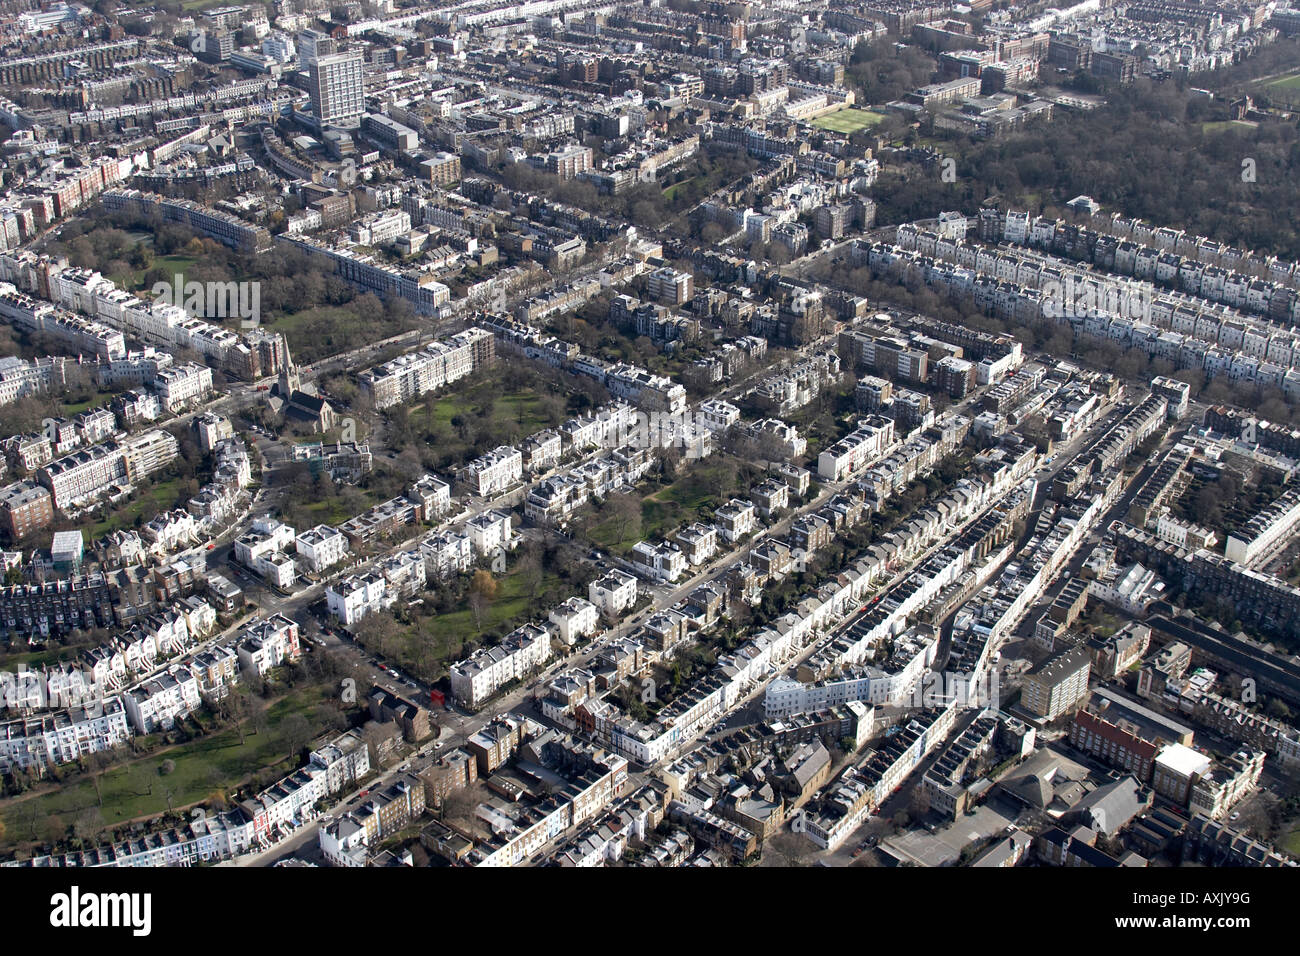 Vue aérienne oblique de haut niveau est de Notting Hill Ladbroke Grove Londres W11 England UK Février 2006 Banque D'Images